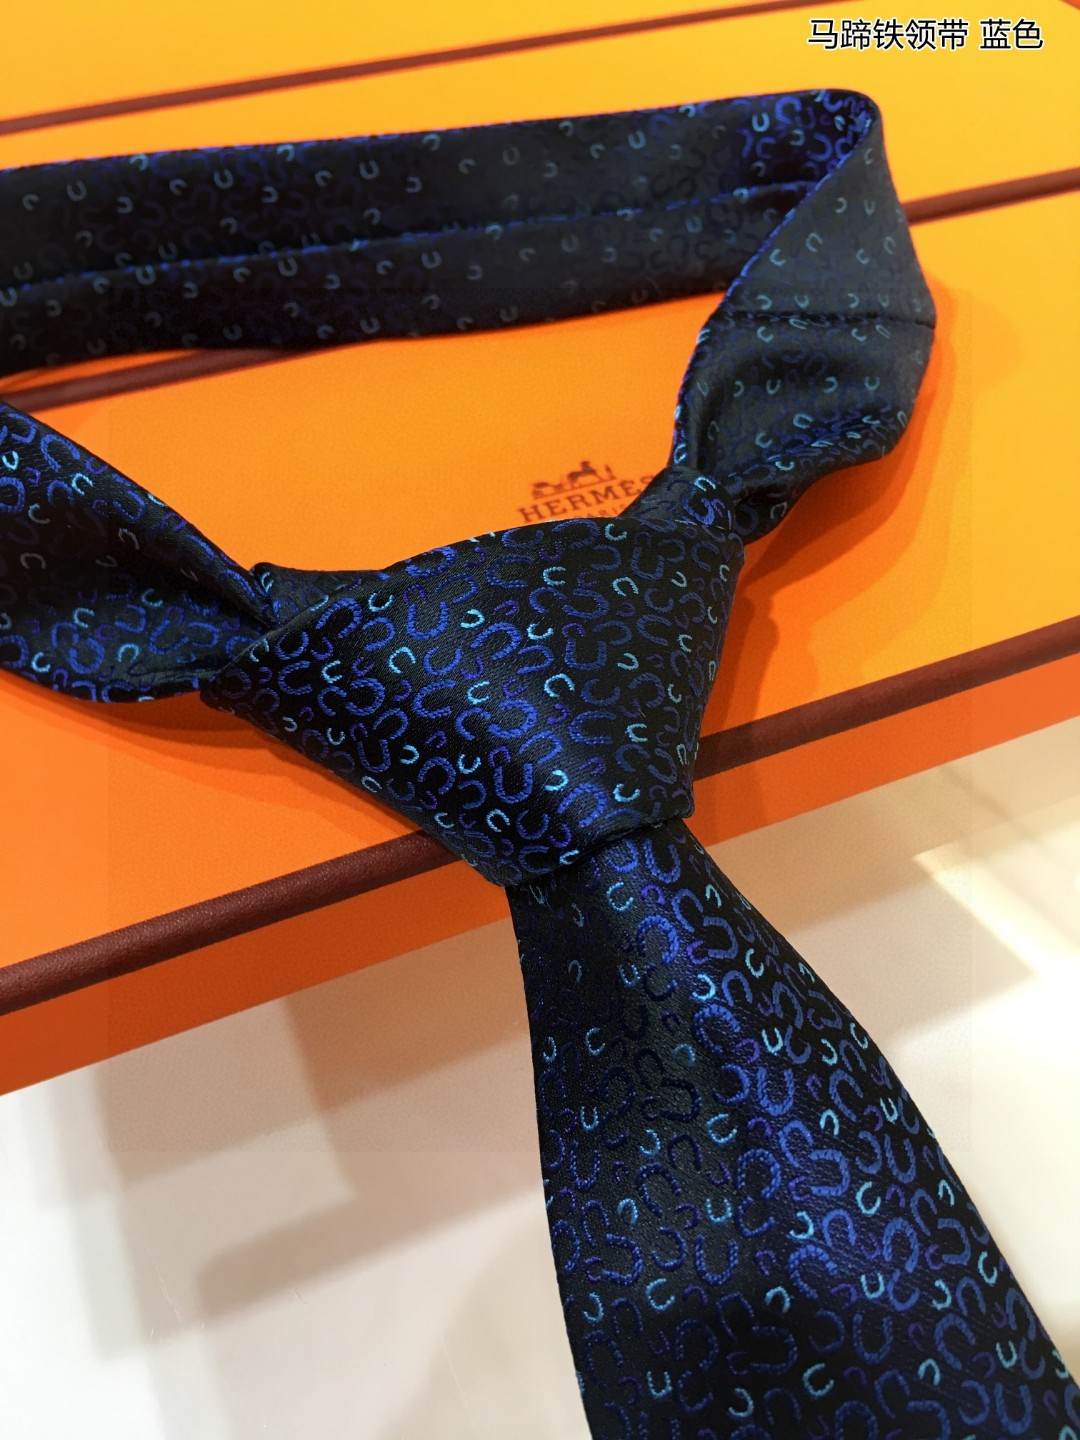 特价男士新款领带系列马蹄铁领带稀有H家每年都有一千条不同印花的领带面世从最初的多以几何图案表现骑术活动为